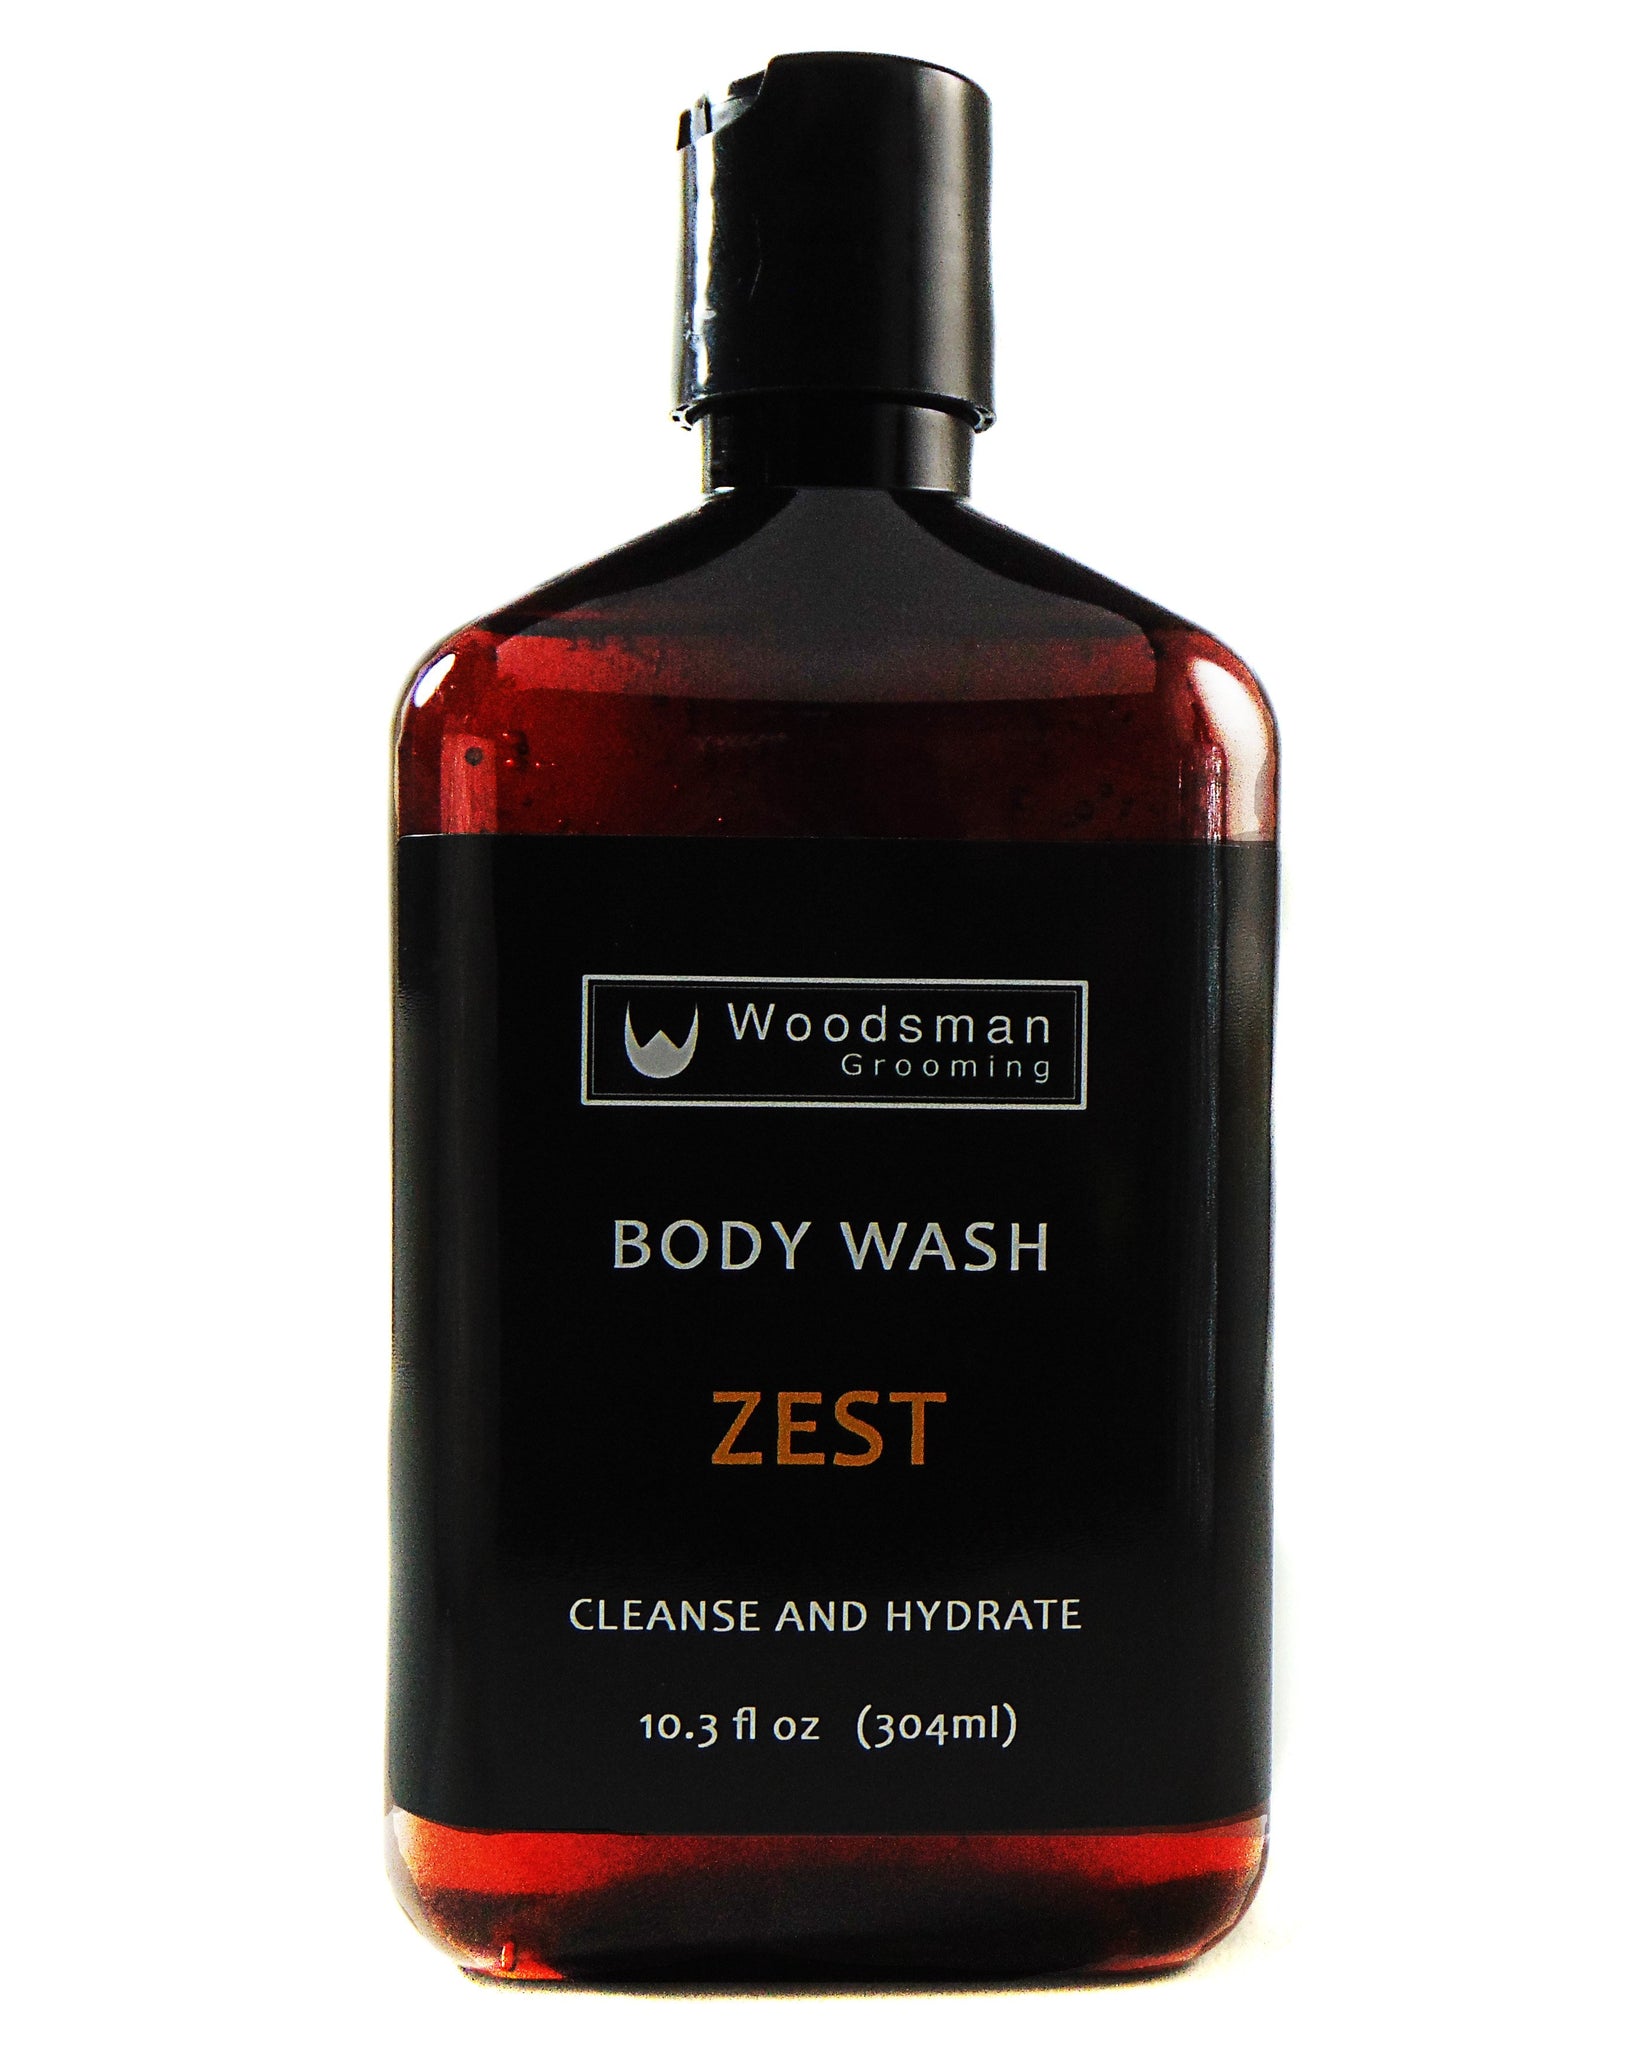 Men's Body Spray - Mahogany Teakwood – The Soap Factory